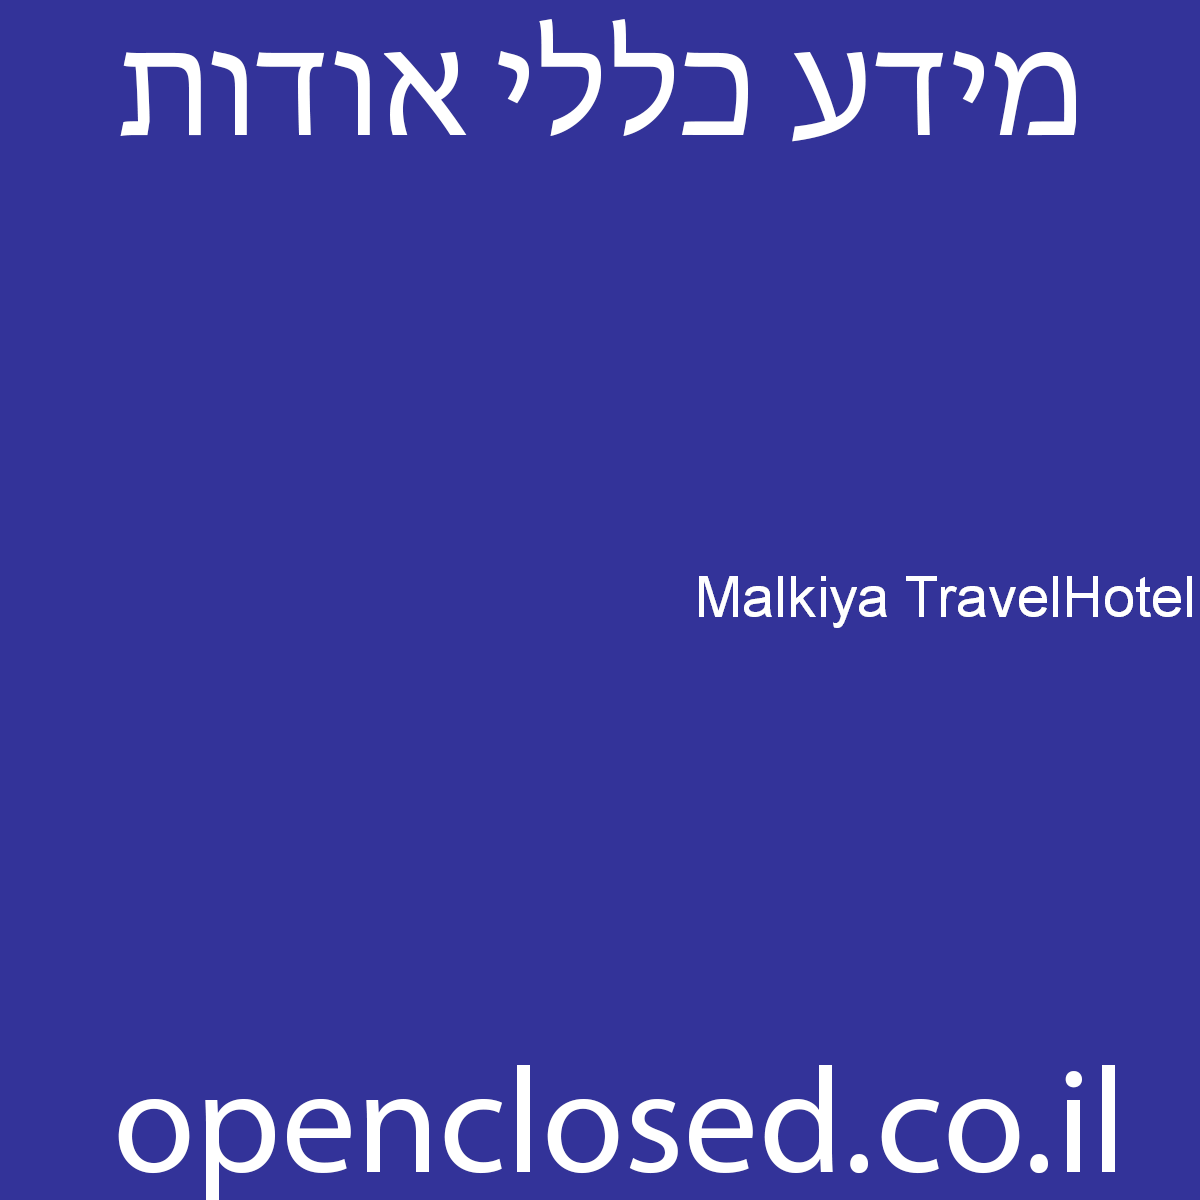 Malkiya TravelHotel